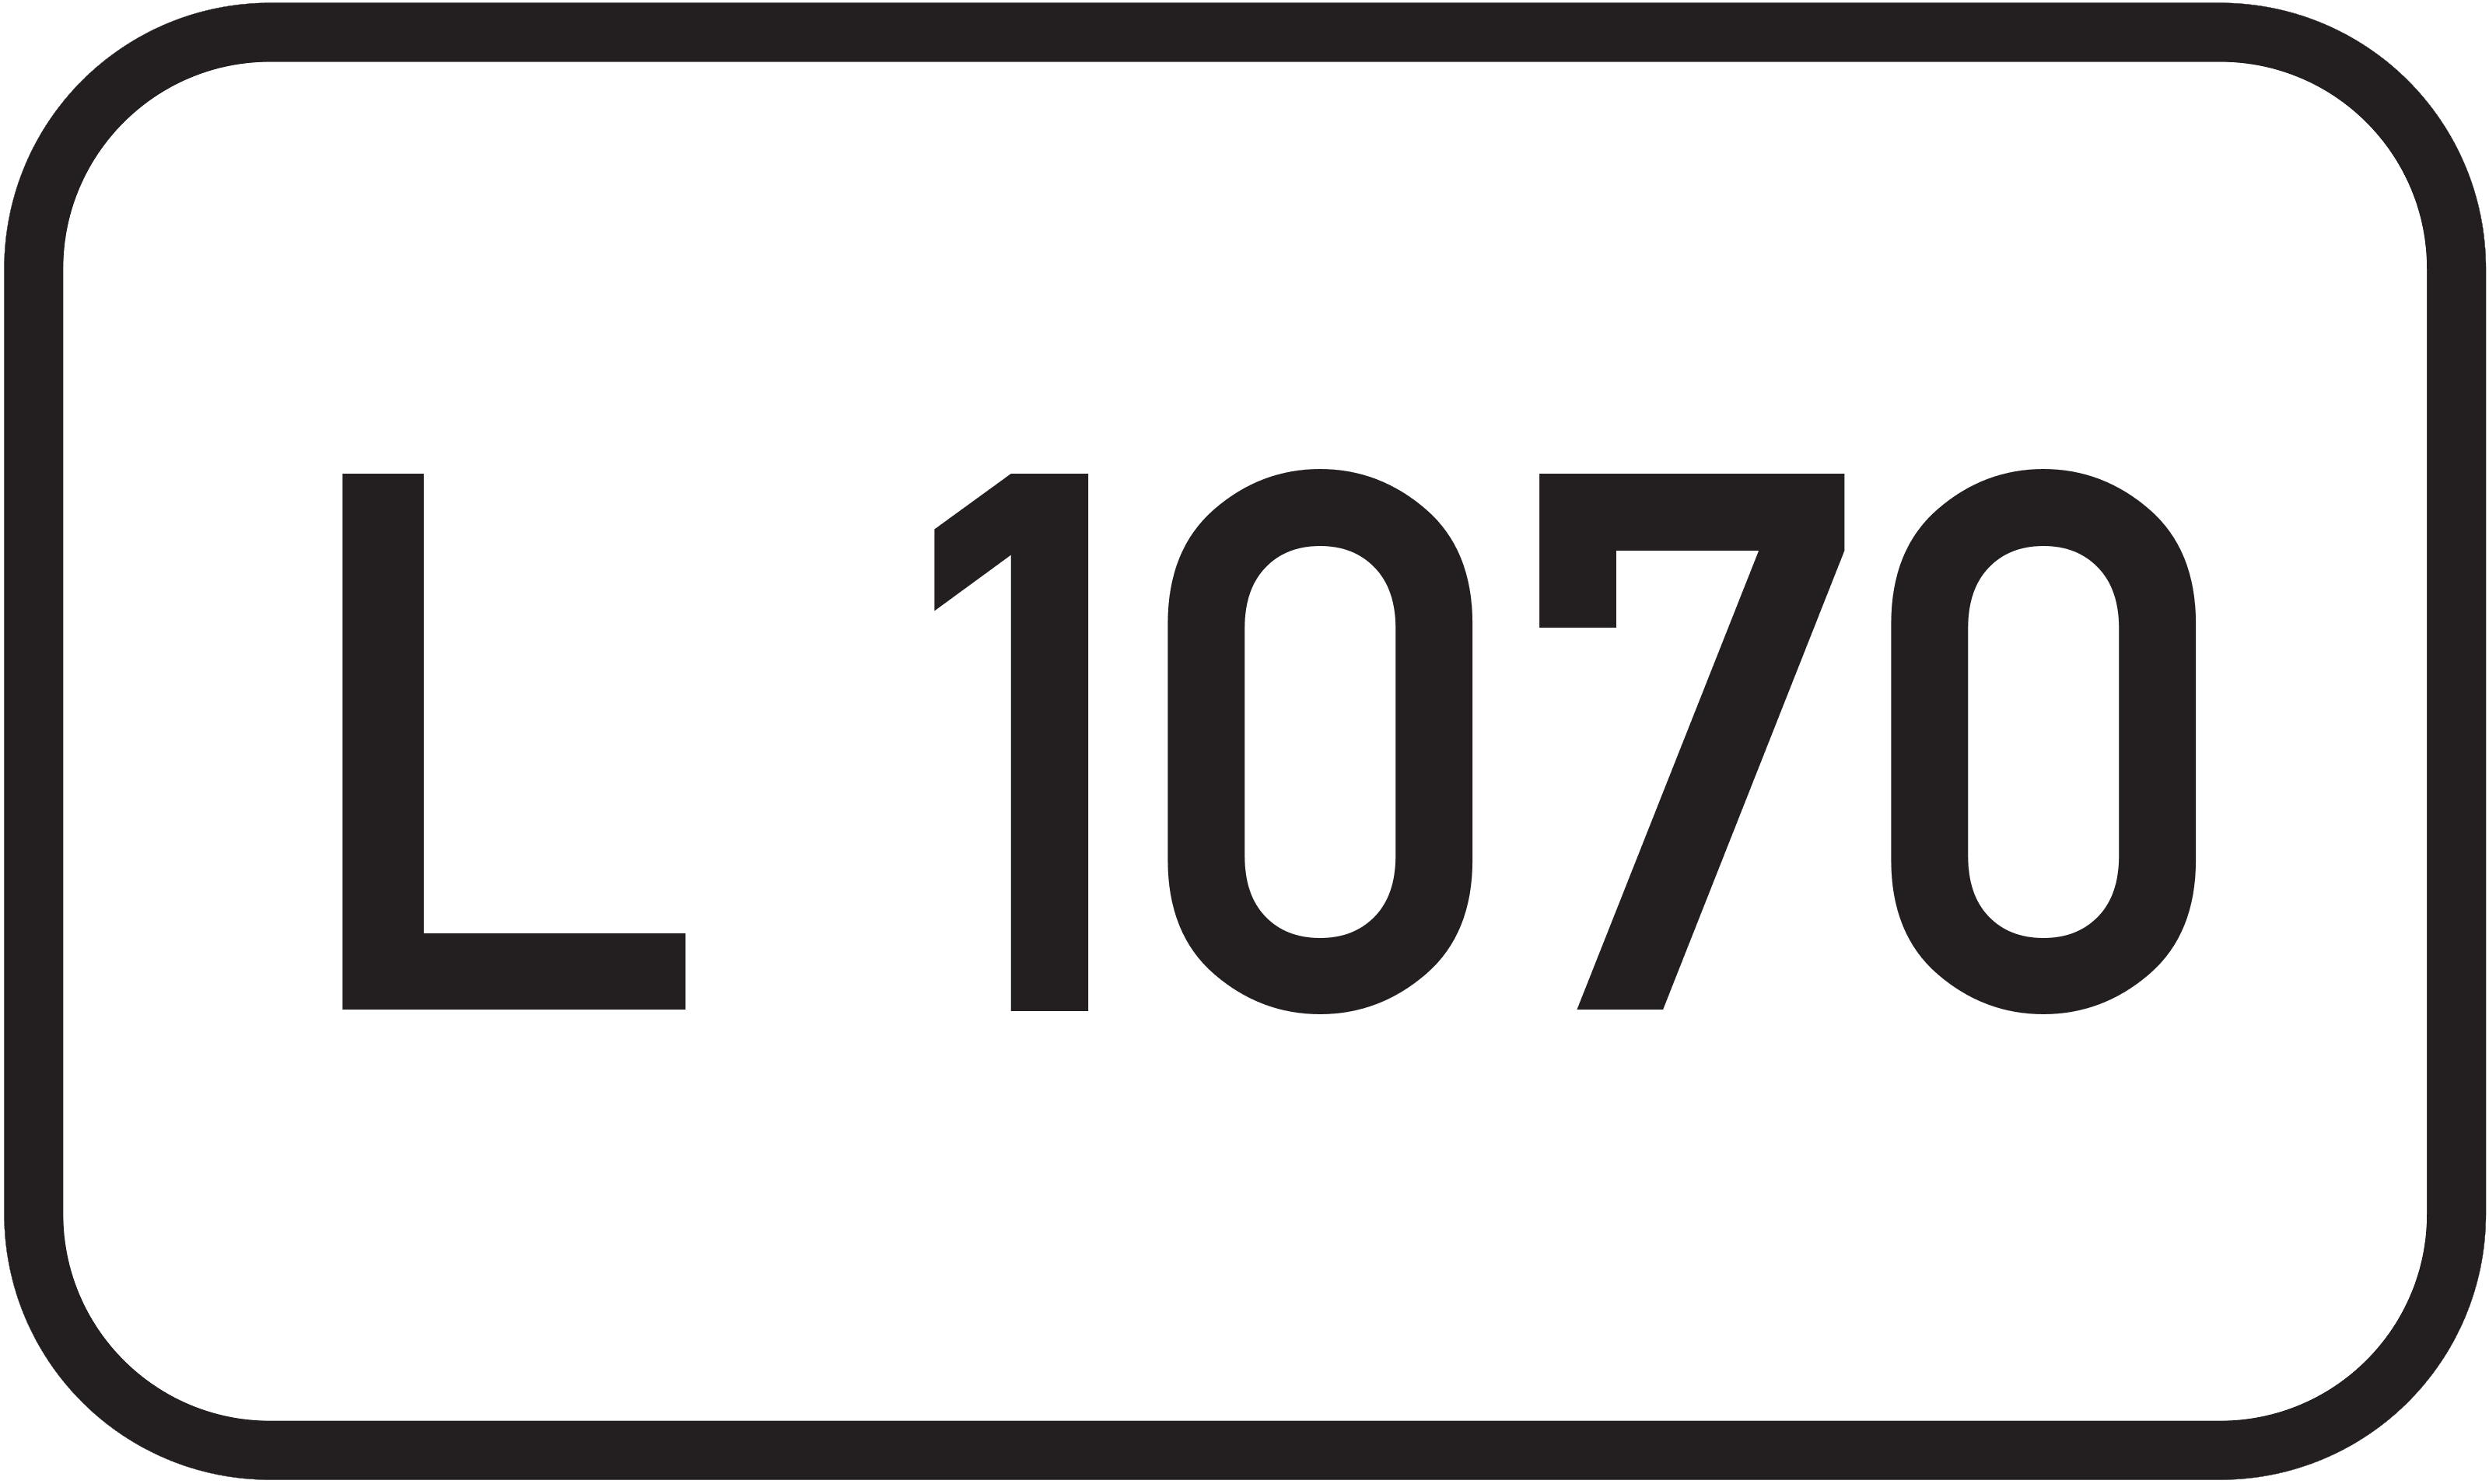 Landesstraße L 1070